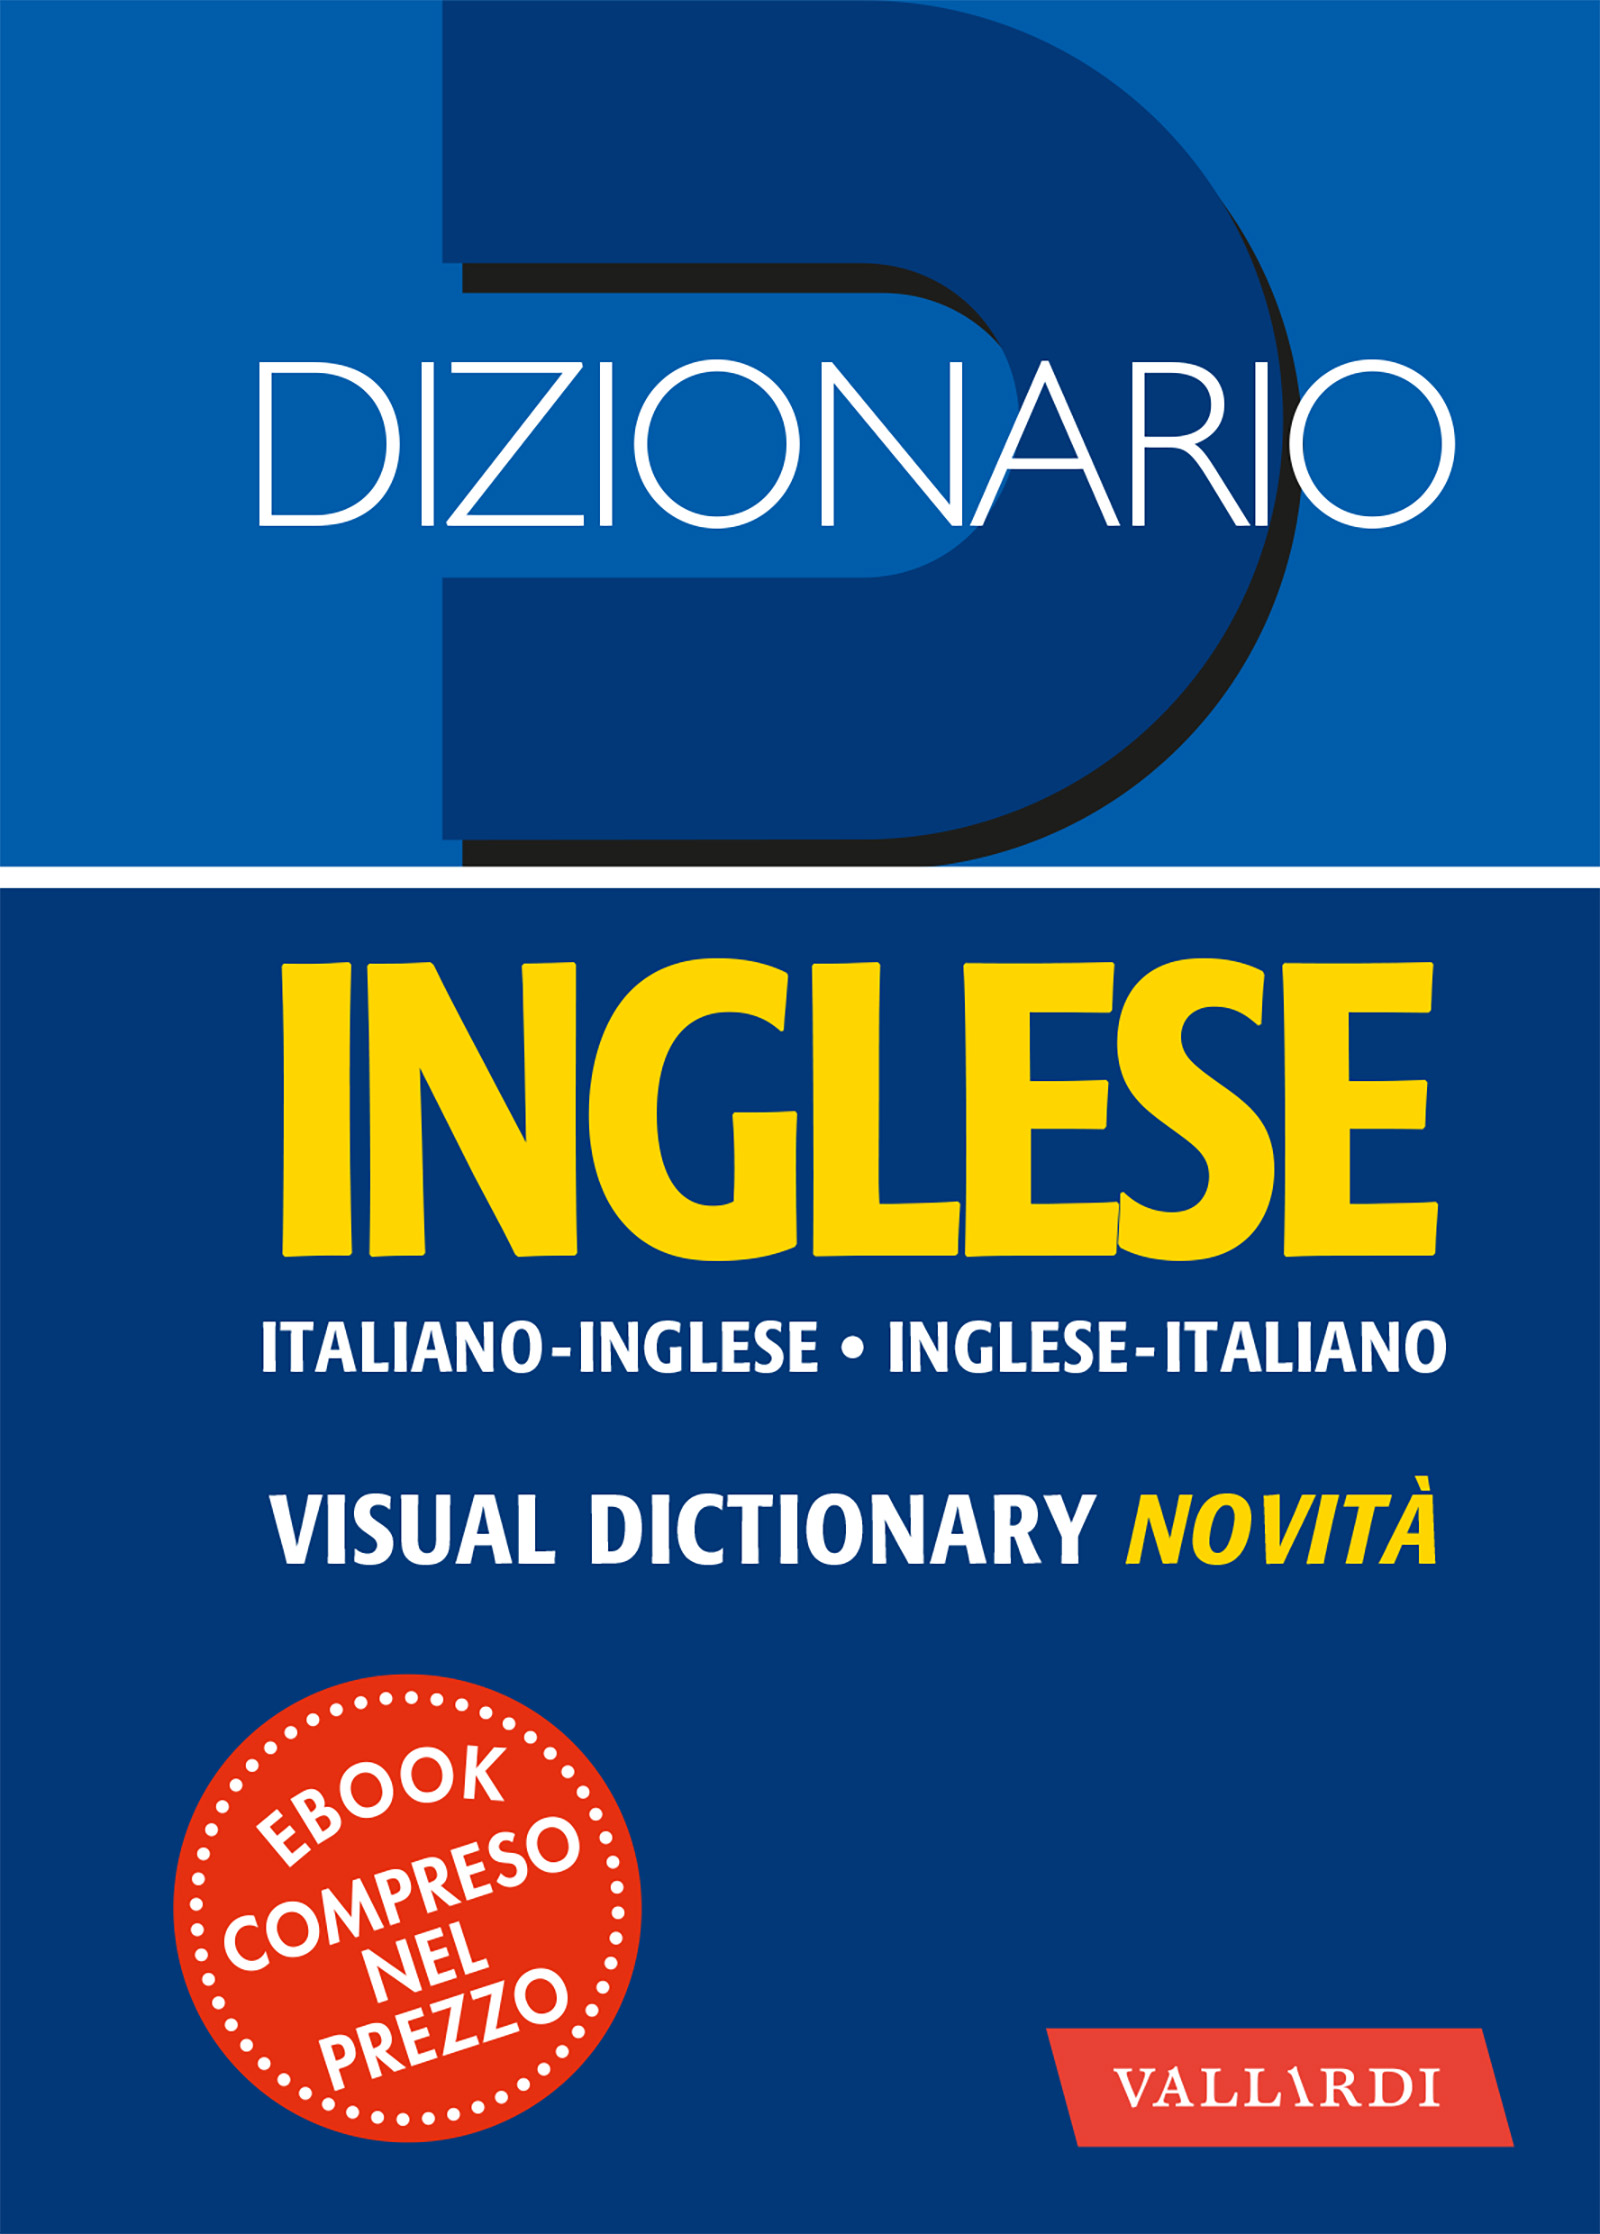 Image of Dizionario inglese tascabile